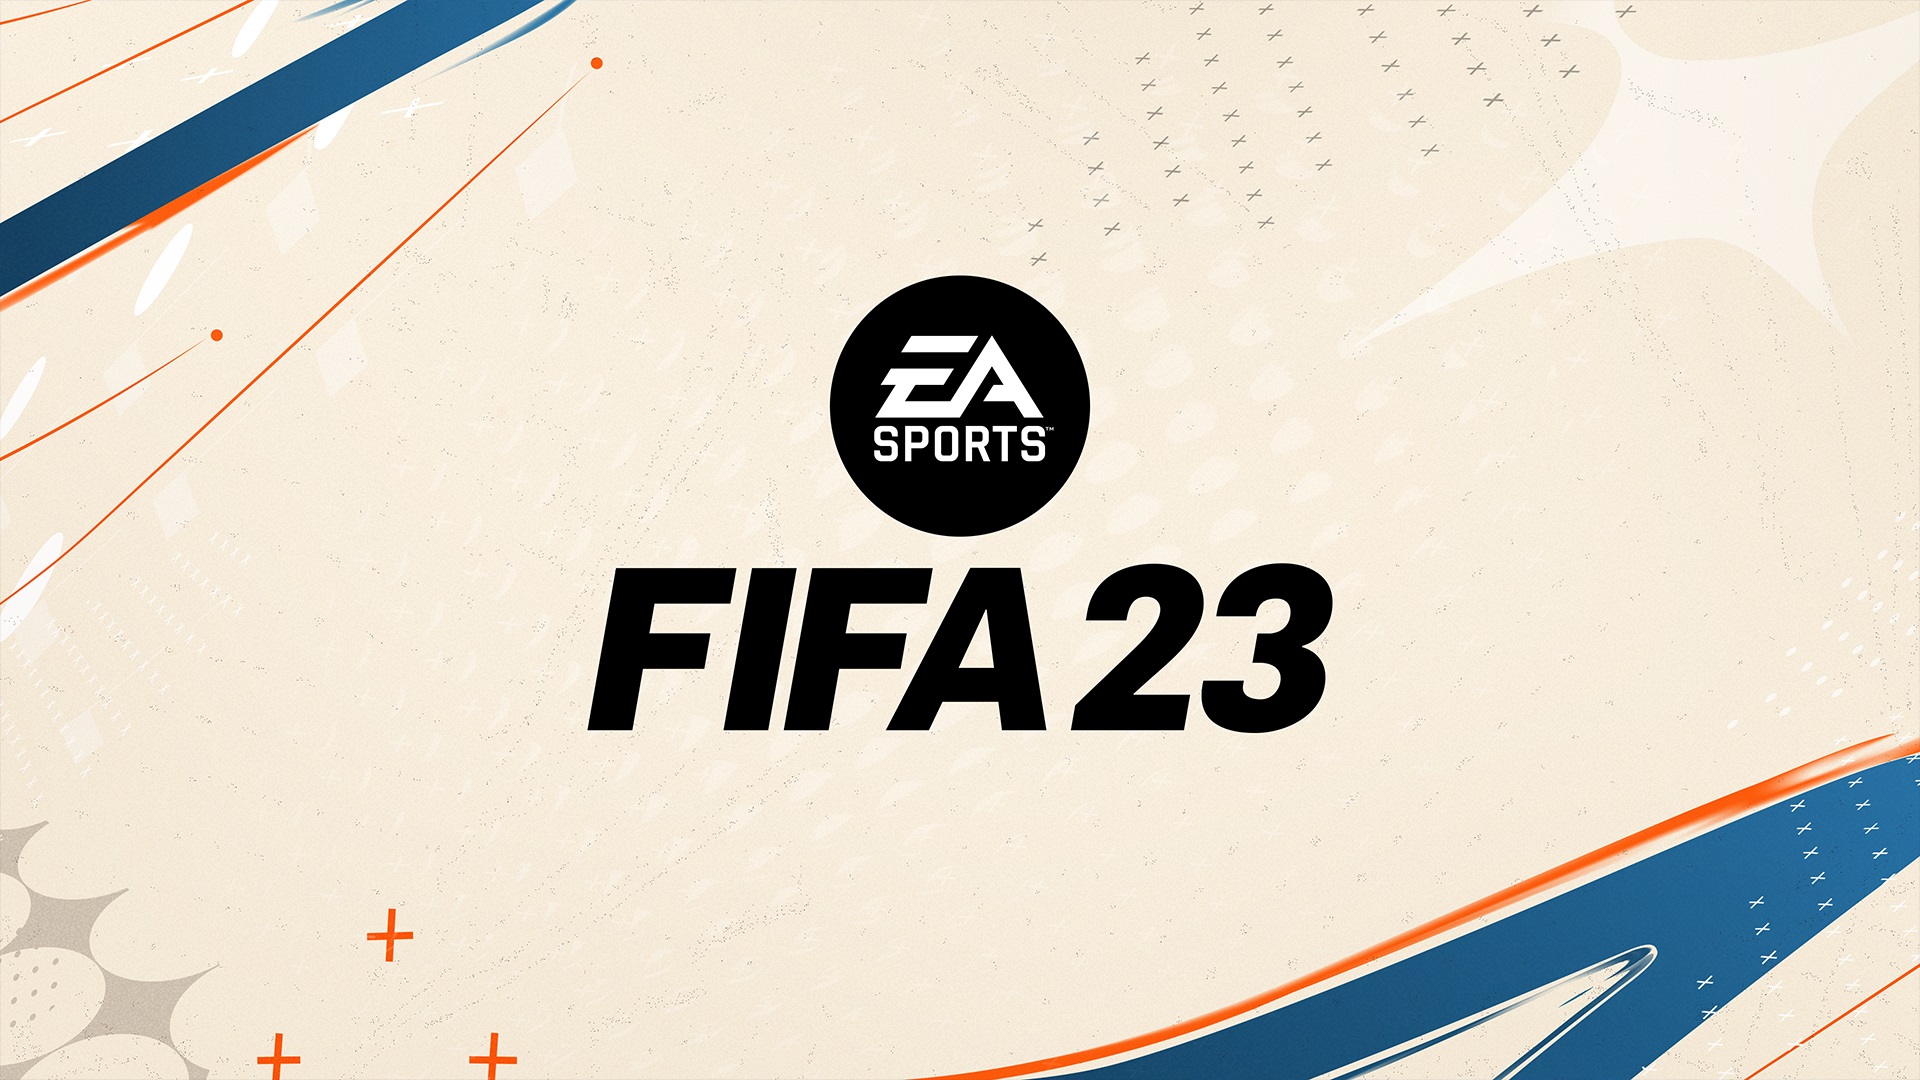 Novos dribles do FIFA 23: saiba quais são e como fazer